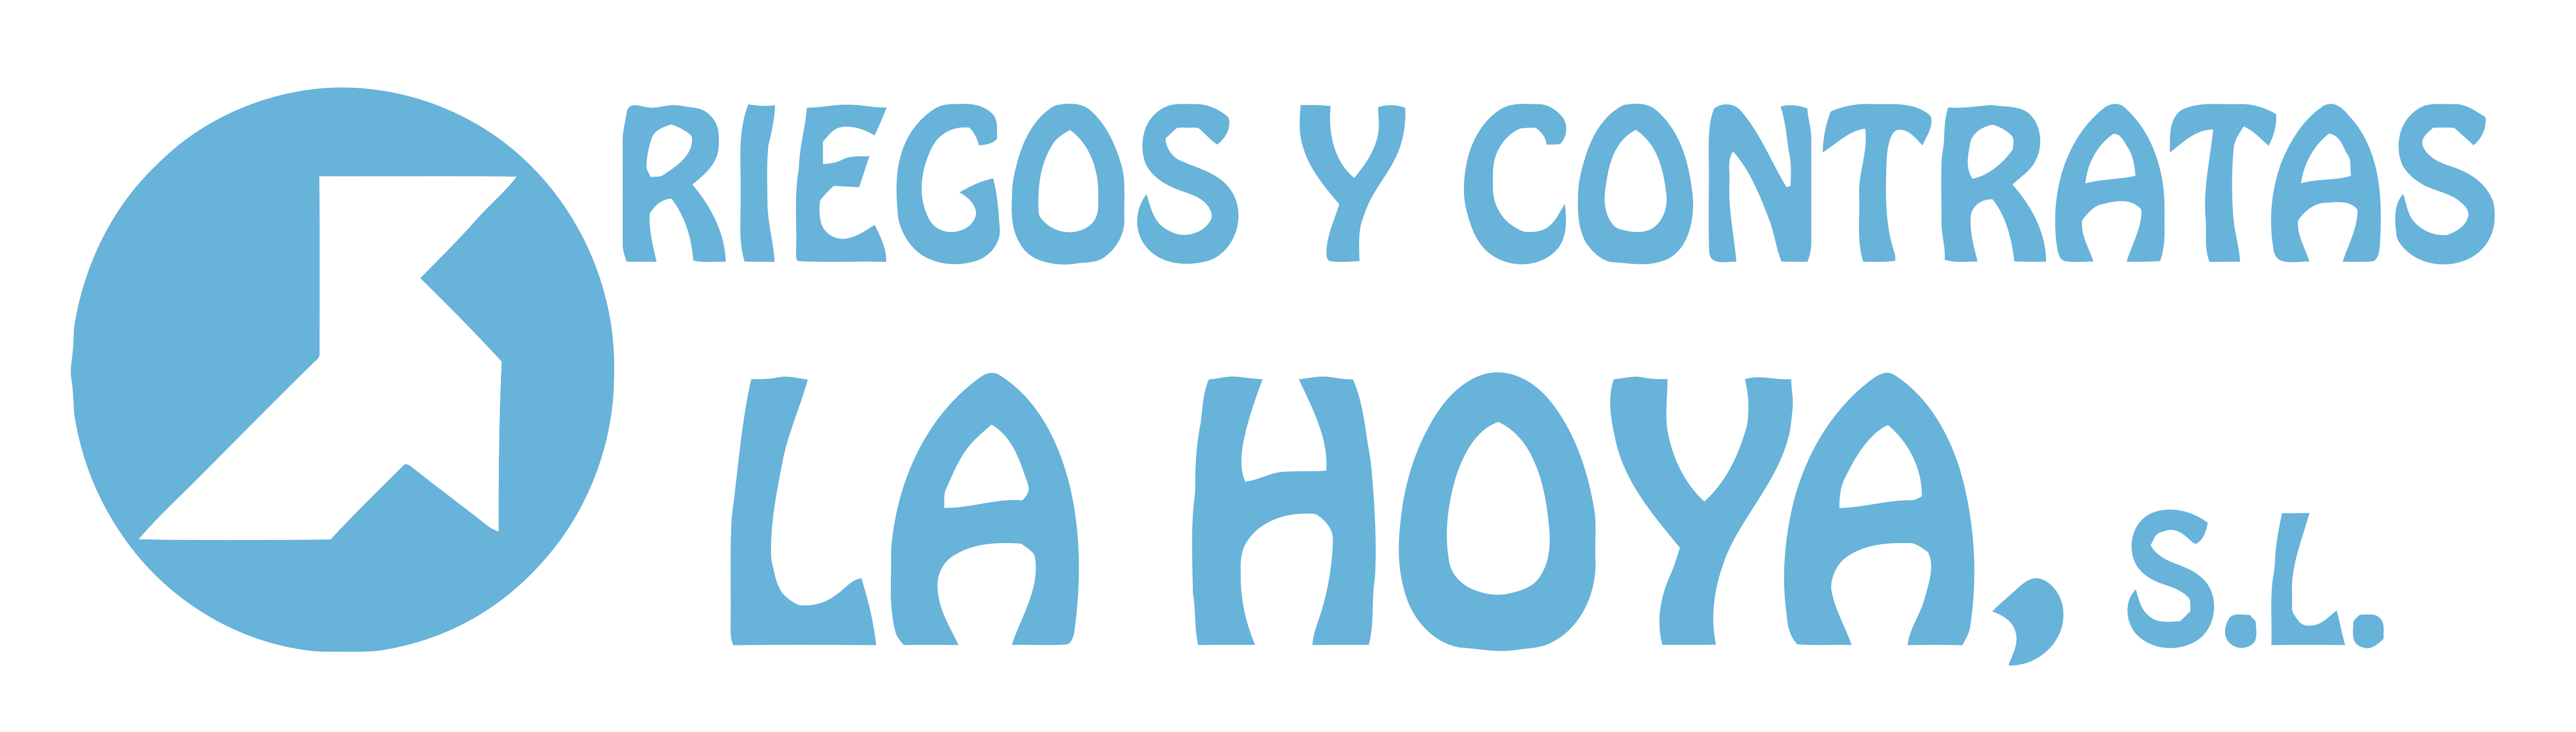 Riegos y contratas La Hoya S.L. / Obra Civil en Huesca - Impremeabilizaciones - Riegos de toda índole